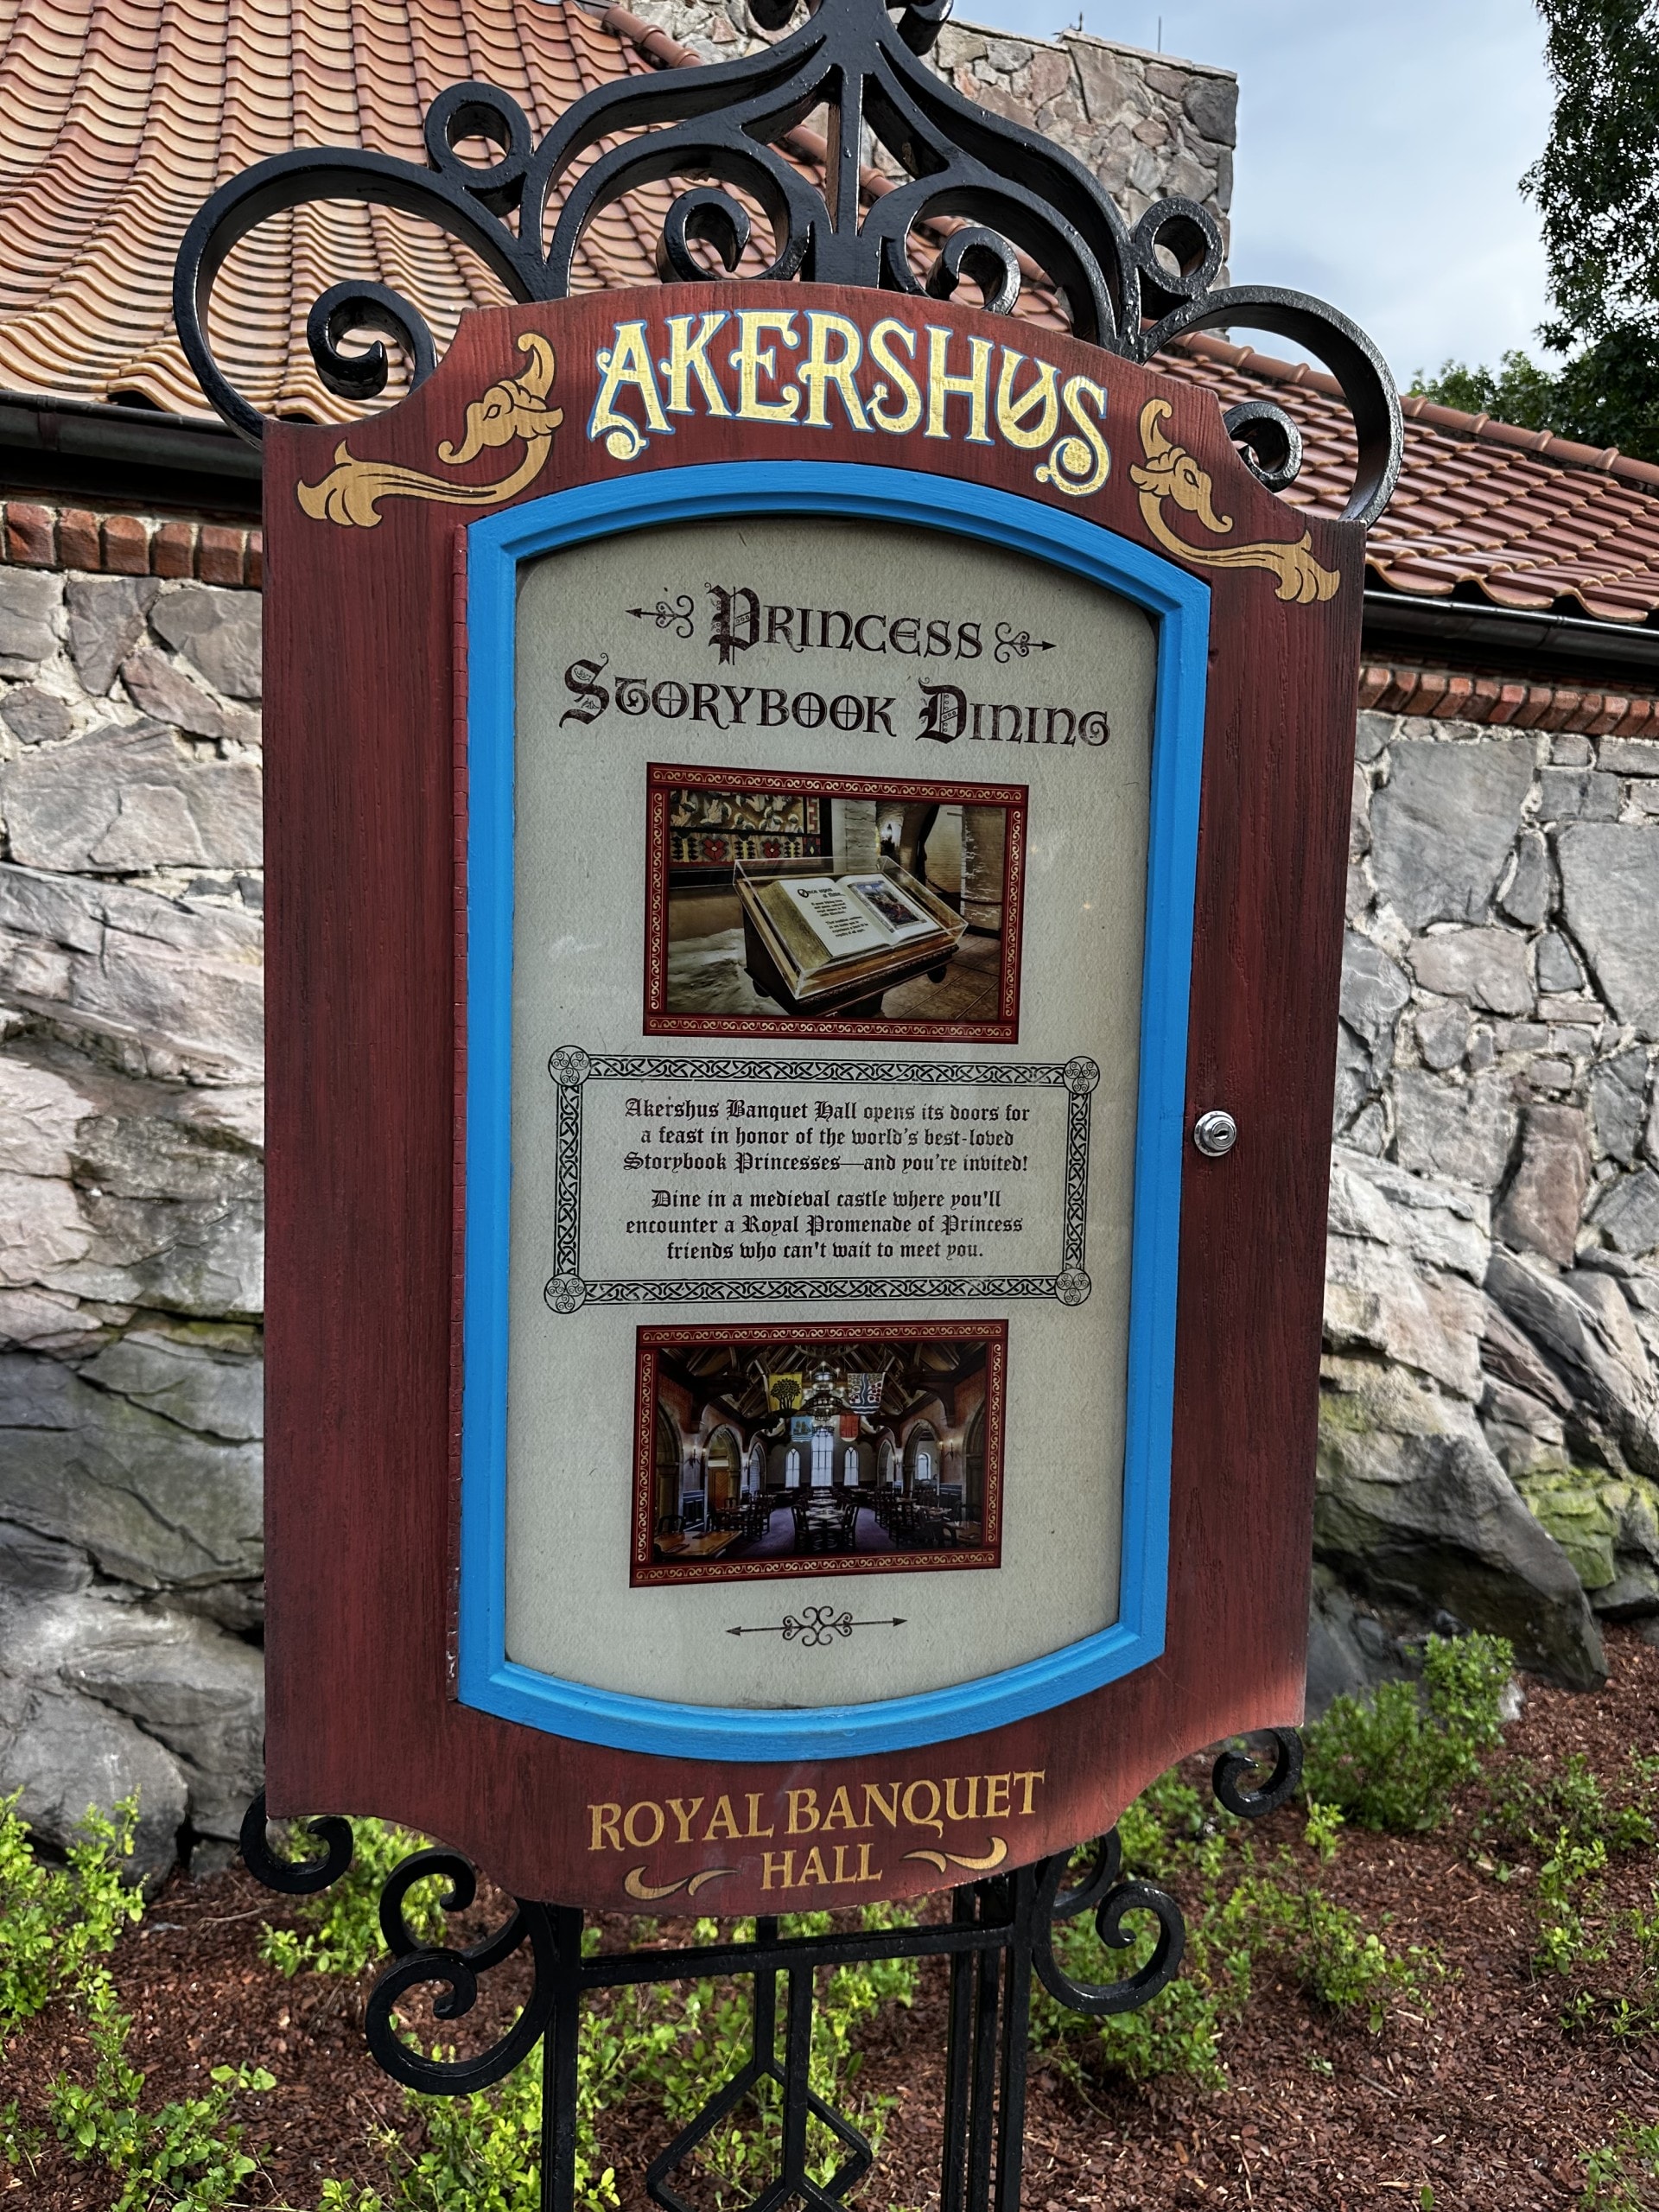 Akershus Royal Banquet Hall: Princess Storybook - Exterior